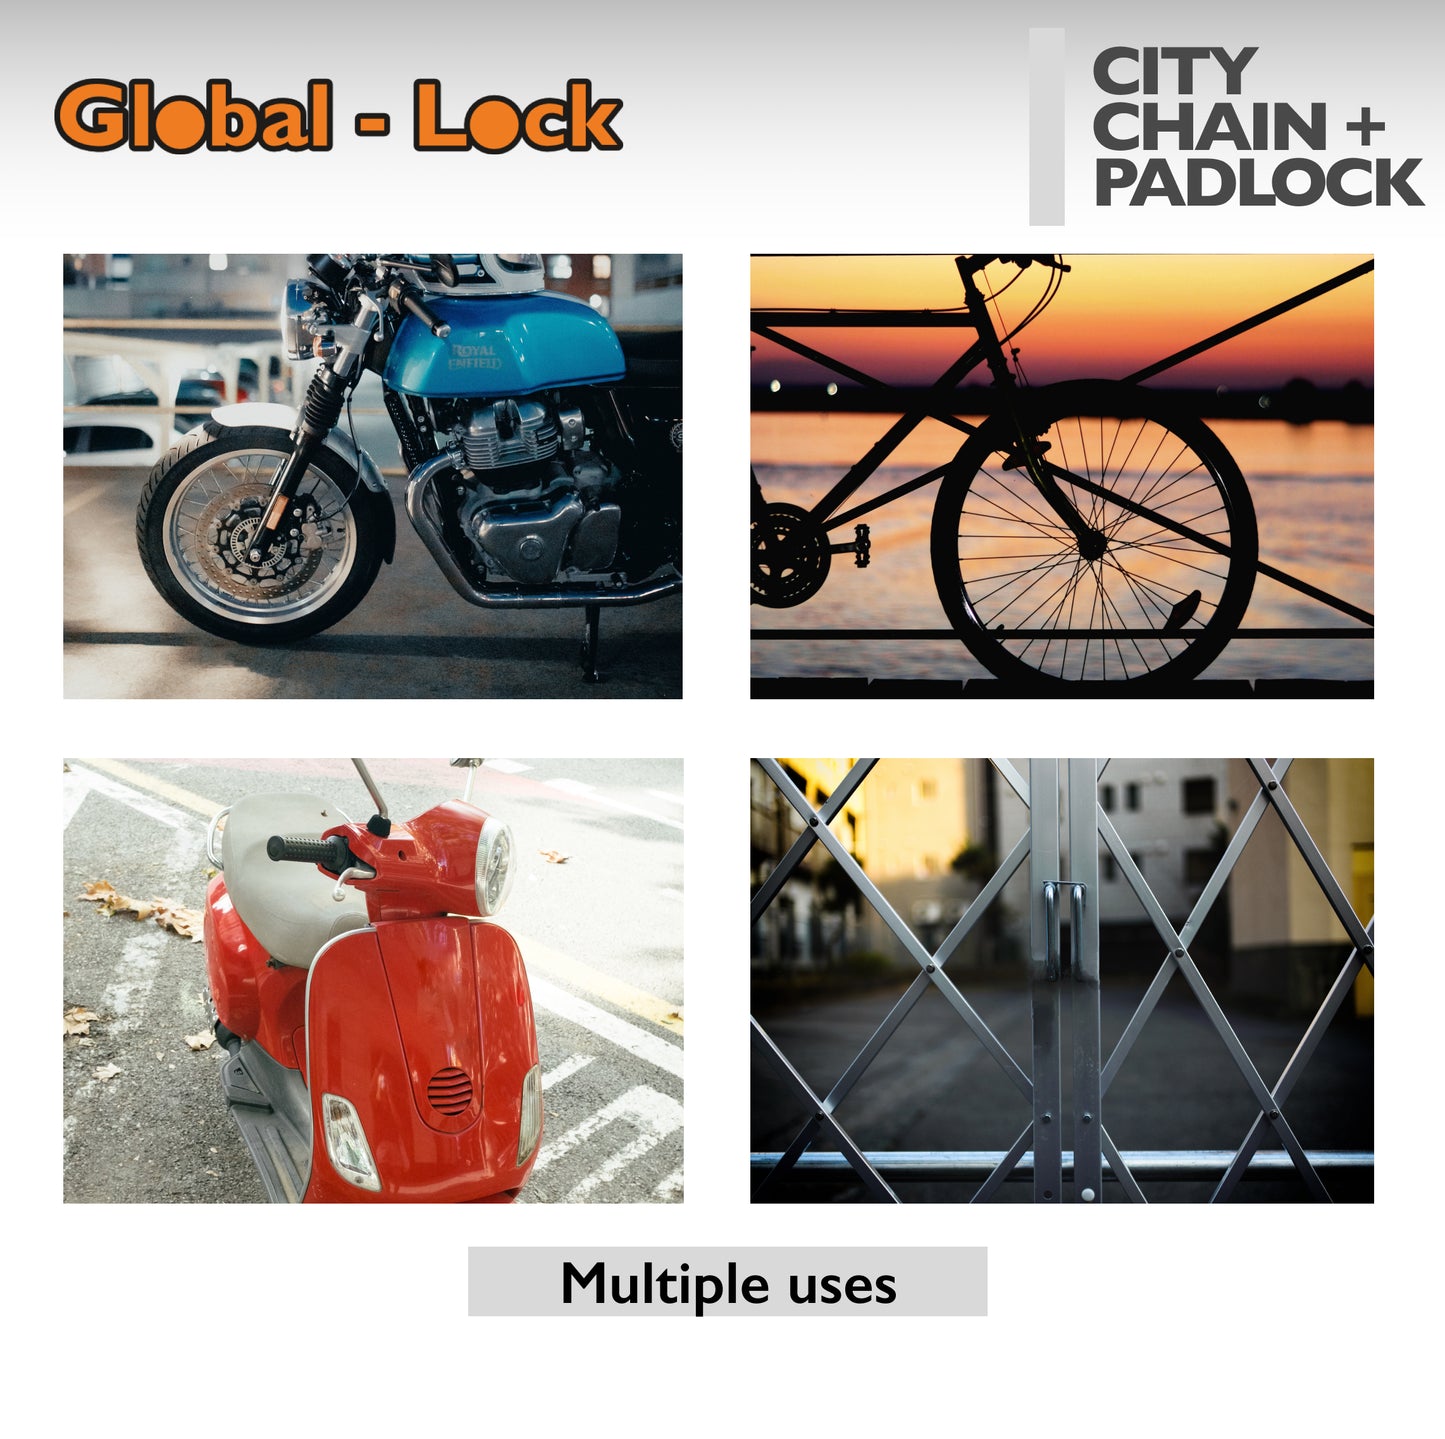 Global-Lock CITY chain + padlock kit